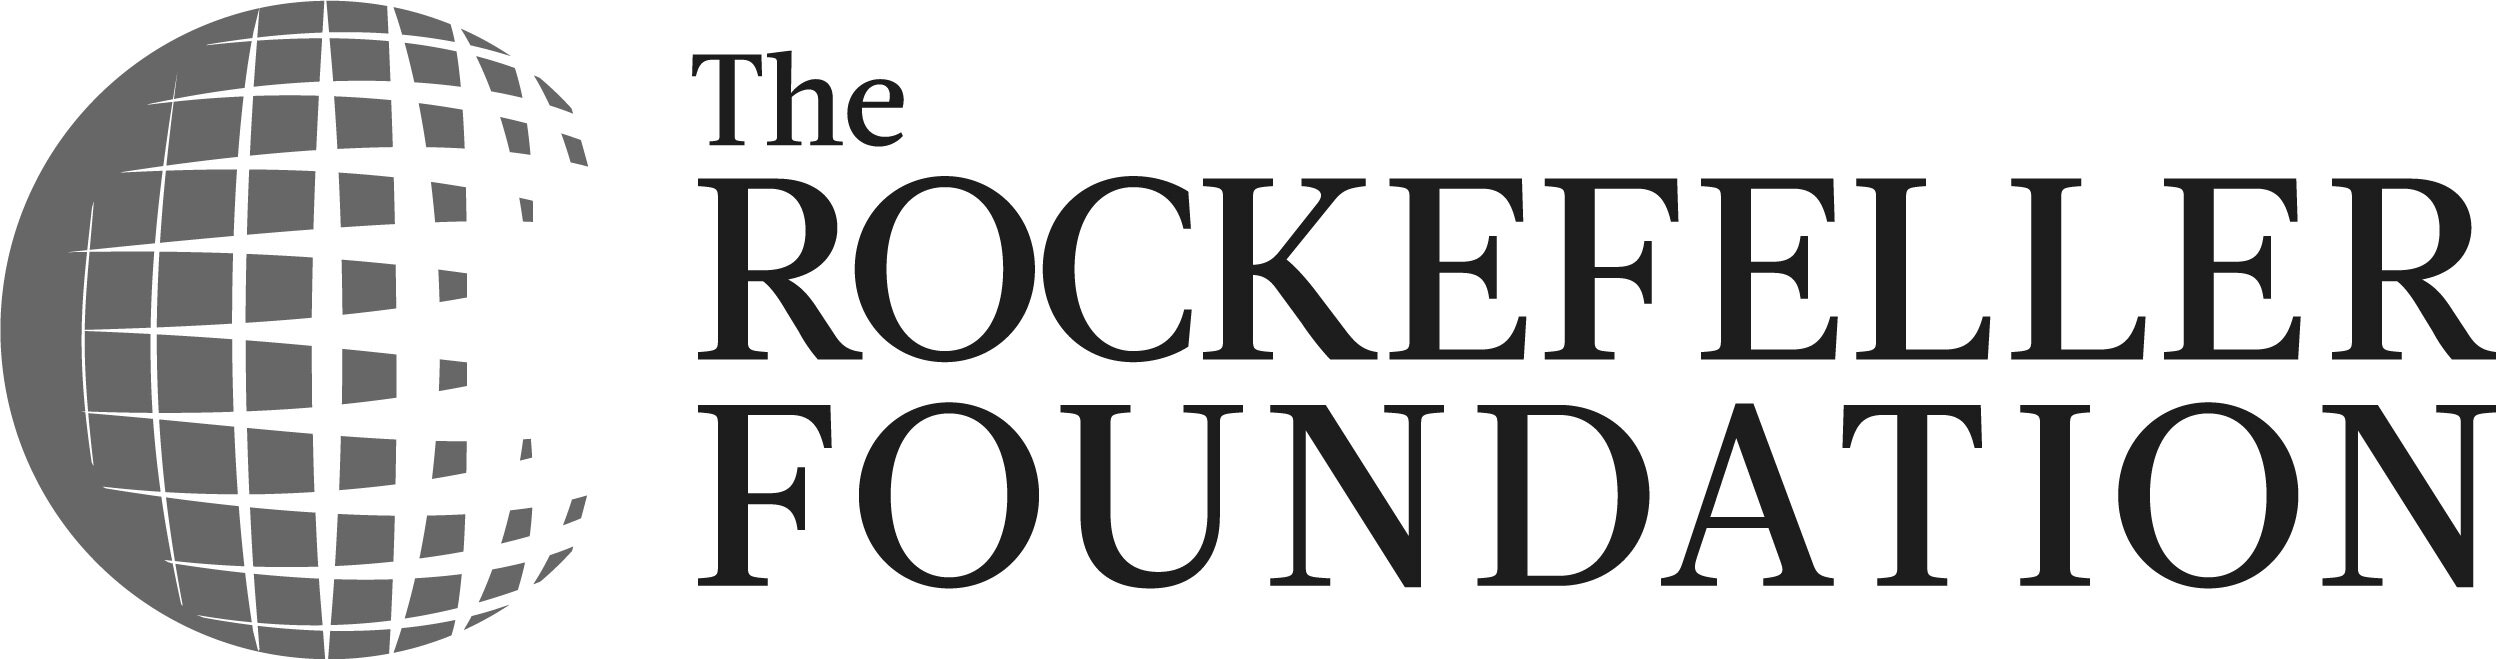 The_Rockefeller_Foundation_Logo.jpg